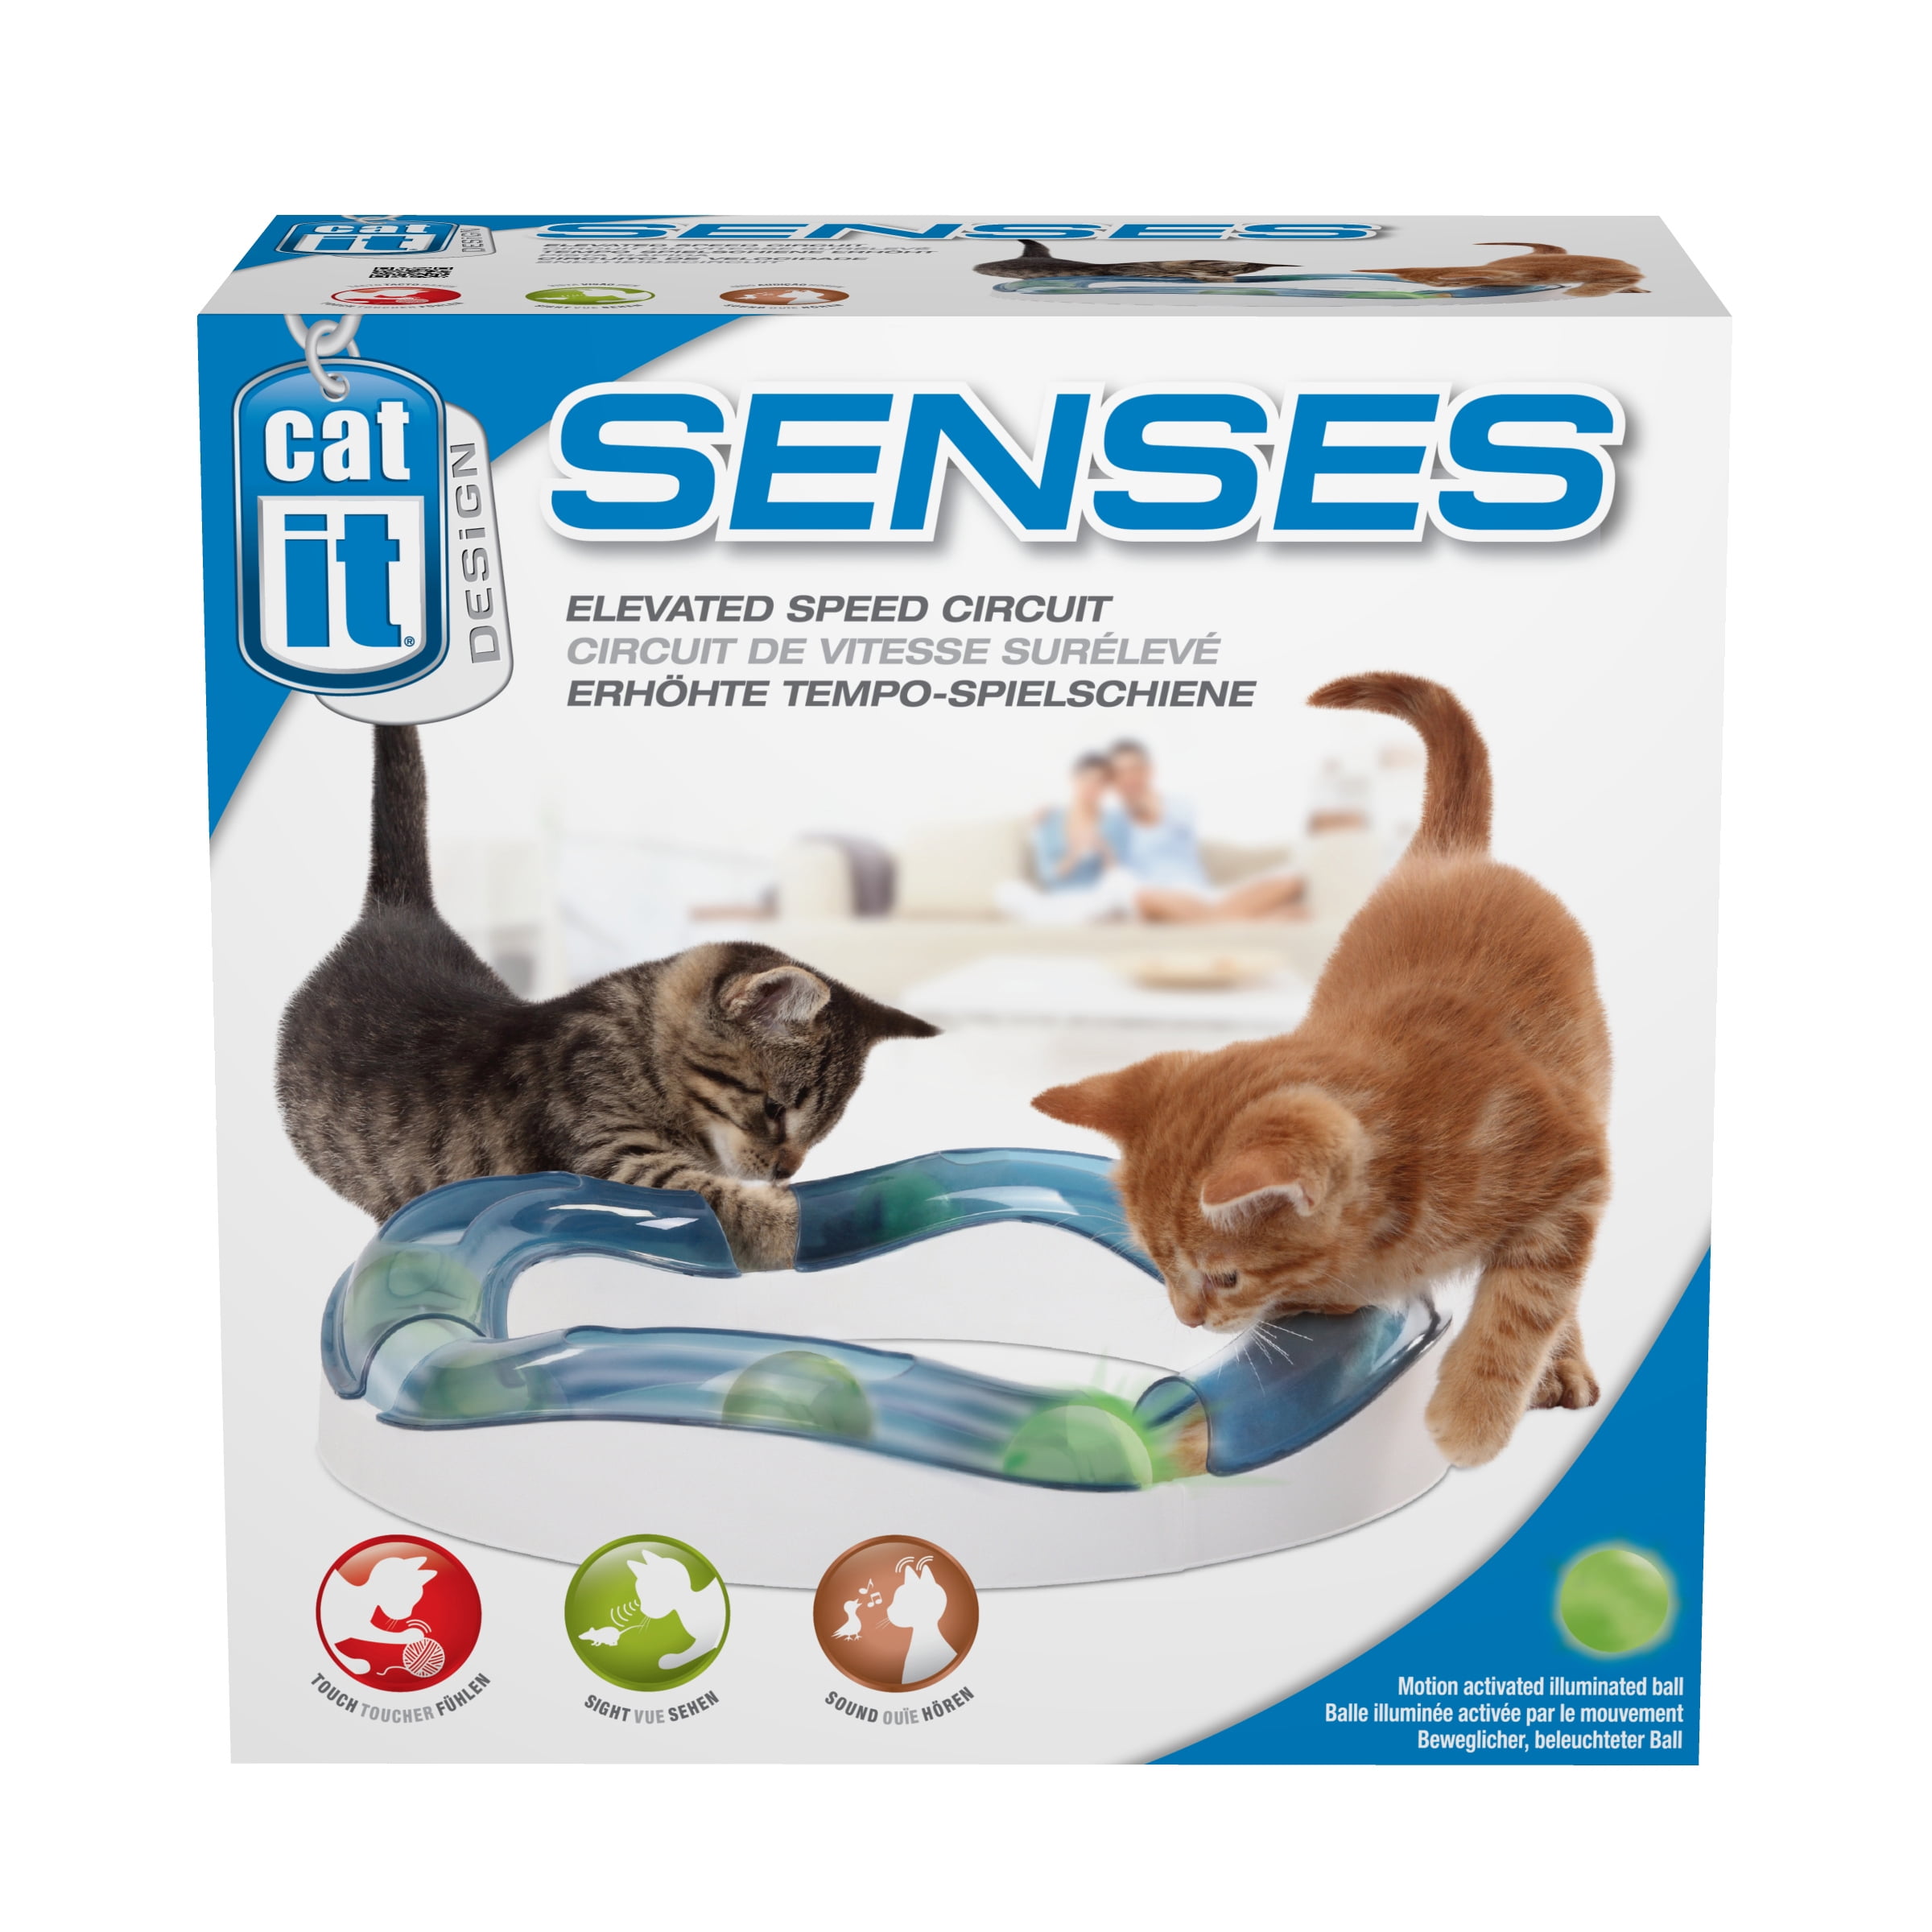 CATIT Design Senses Circuit Motion Activated Illuminated Balls Cat